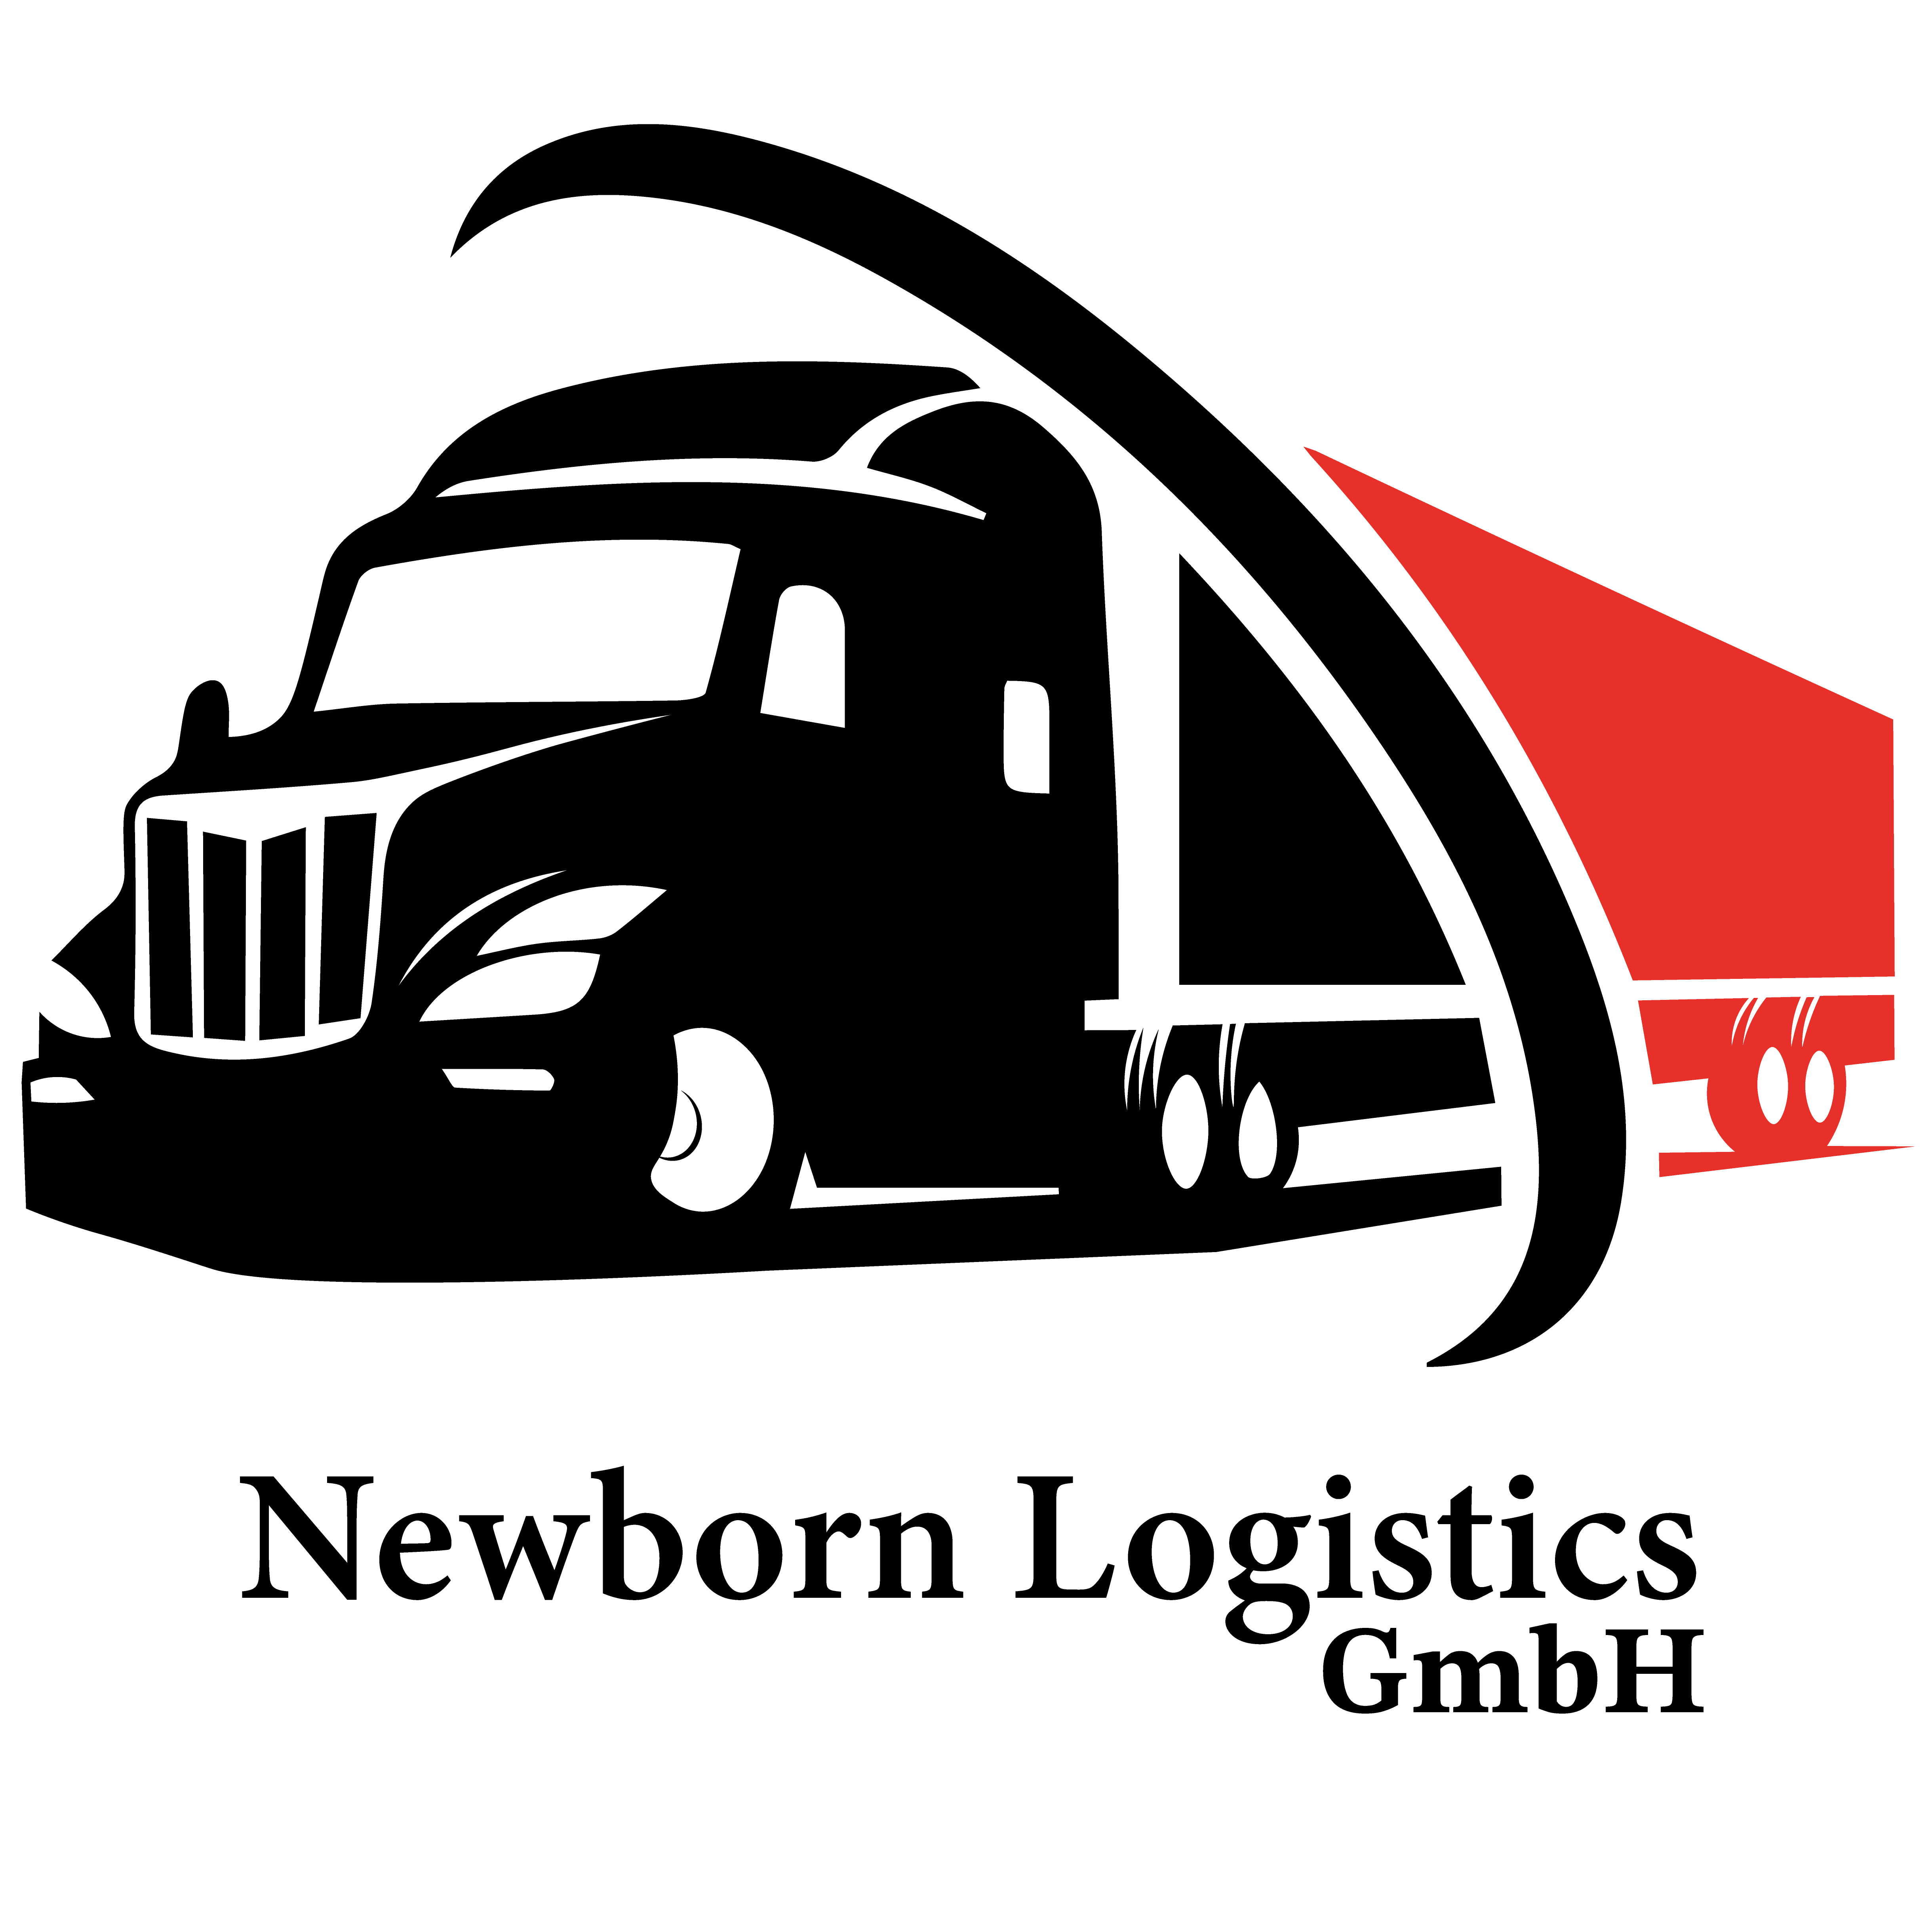 Newborn Logistics GmbH